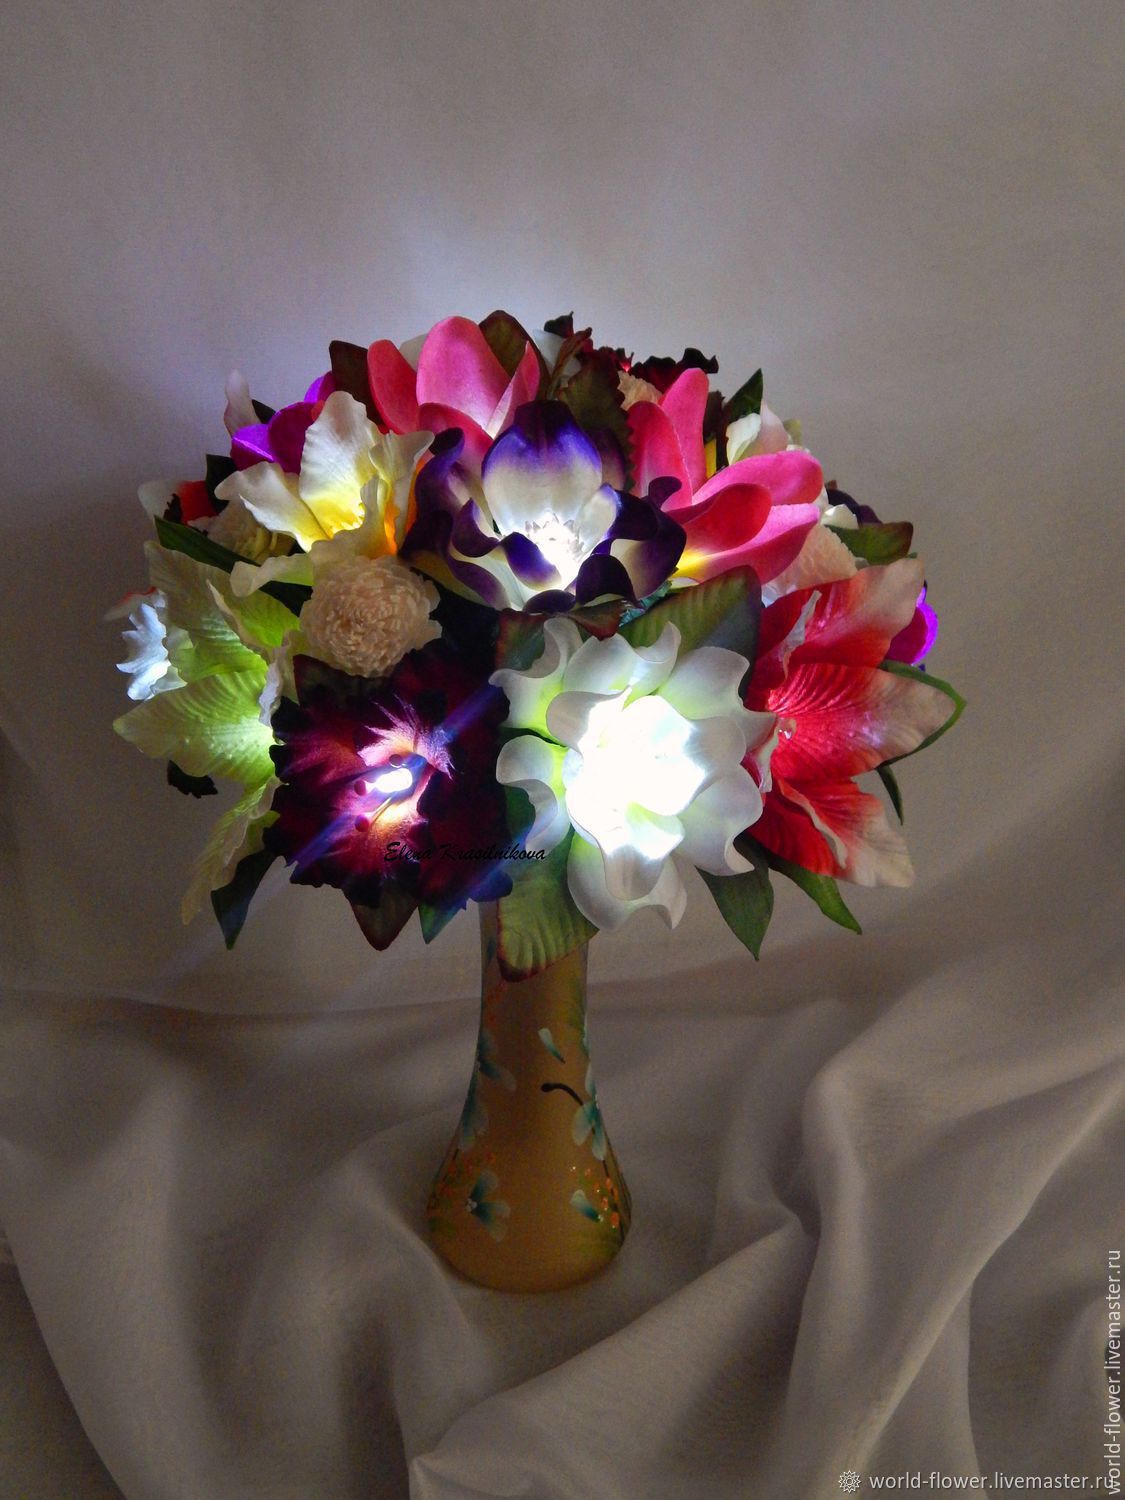 Светильники из цветов ручной работы фото